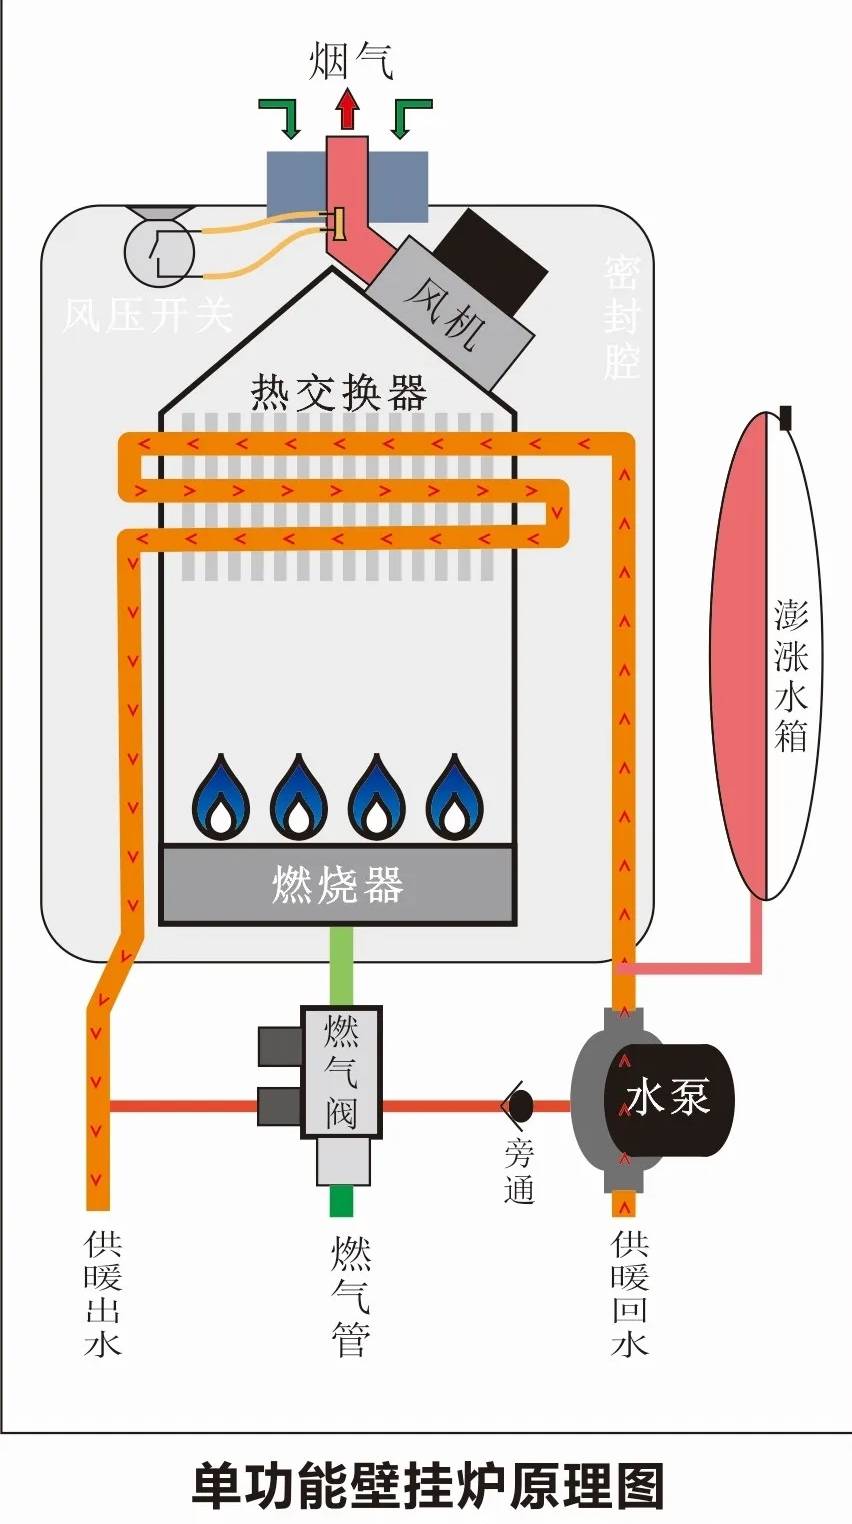 匠奥燃气壁挂炉大讲堂换热水路系统原理功能